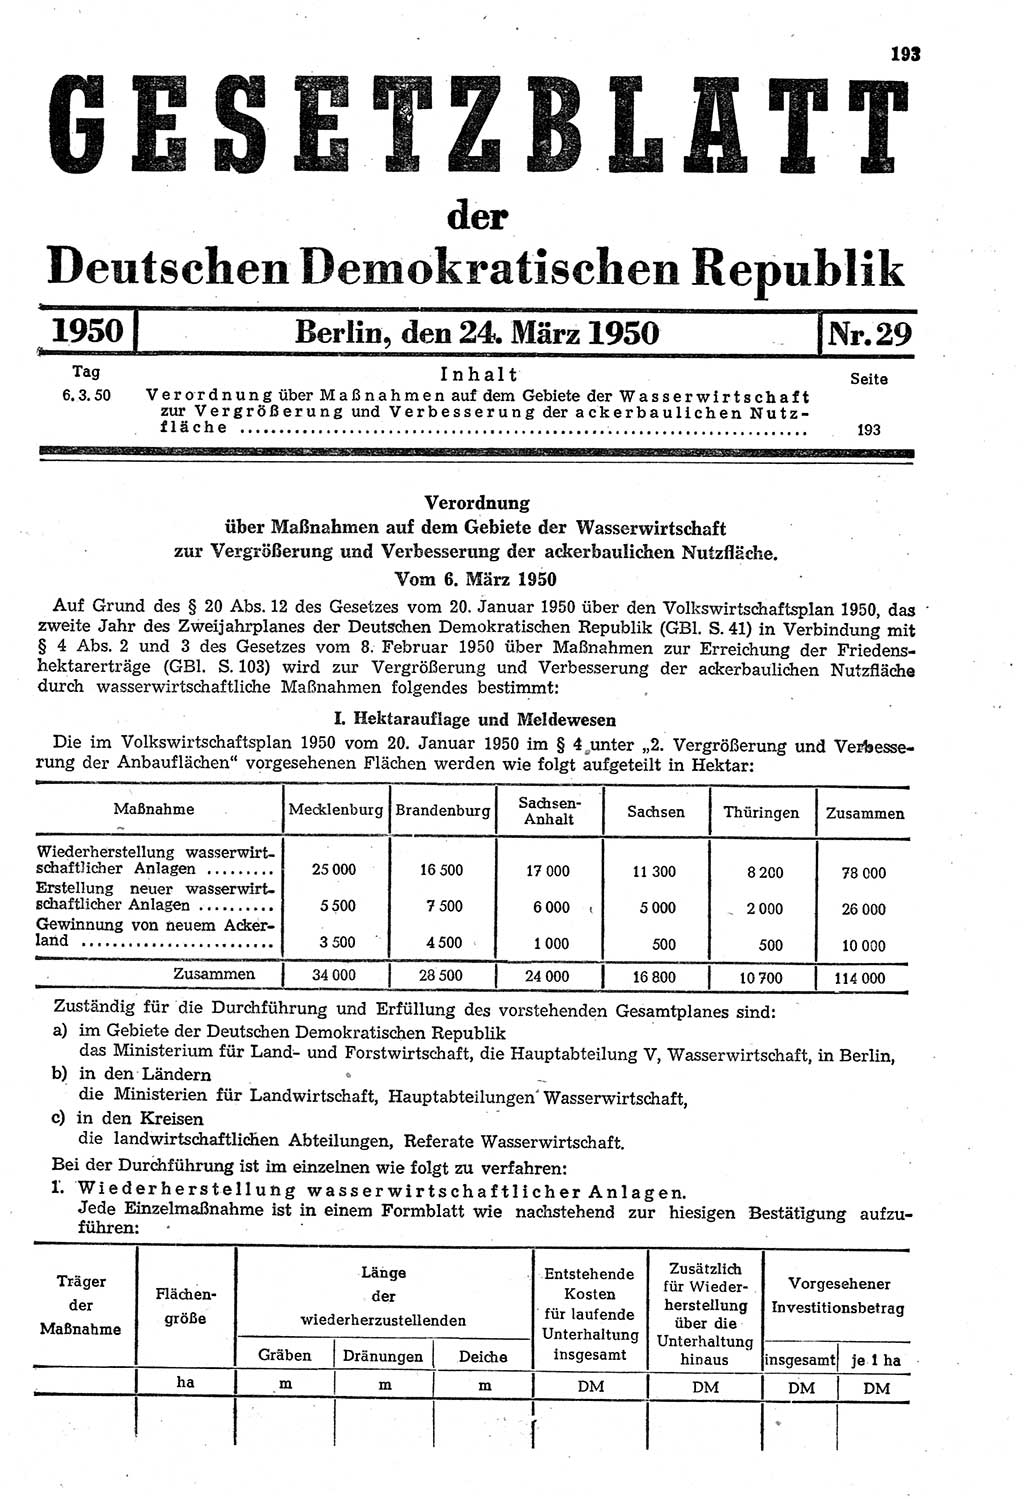 Gesetzblatt (GBl.) der Deutschen Demokratischen Republik (DDR) 1950, Seite 193 (GBl. DDR 1950, S. 193)